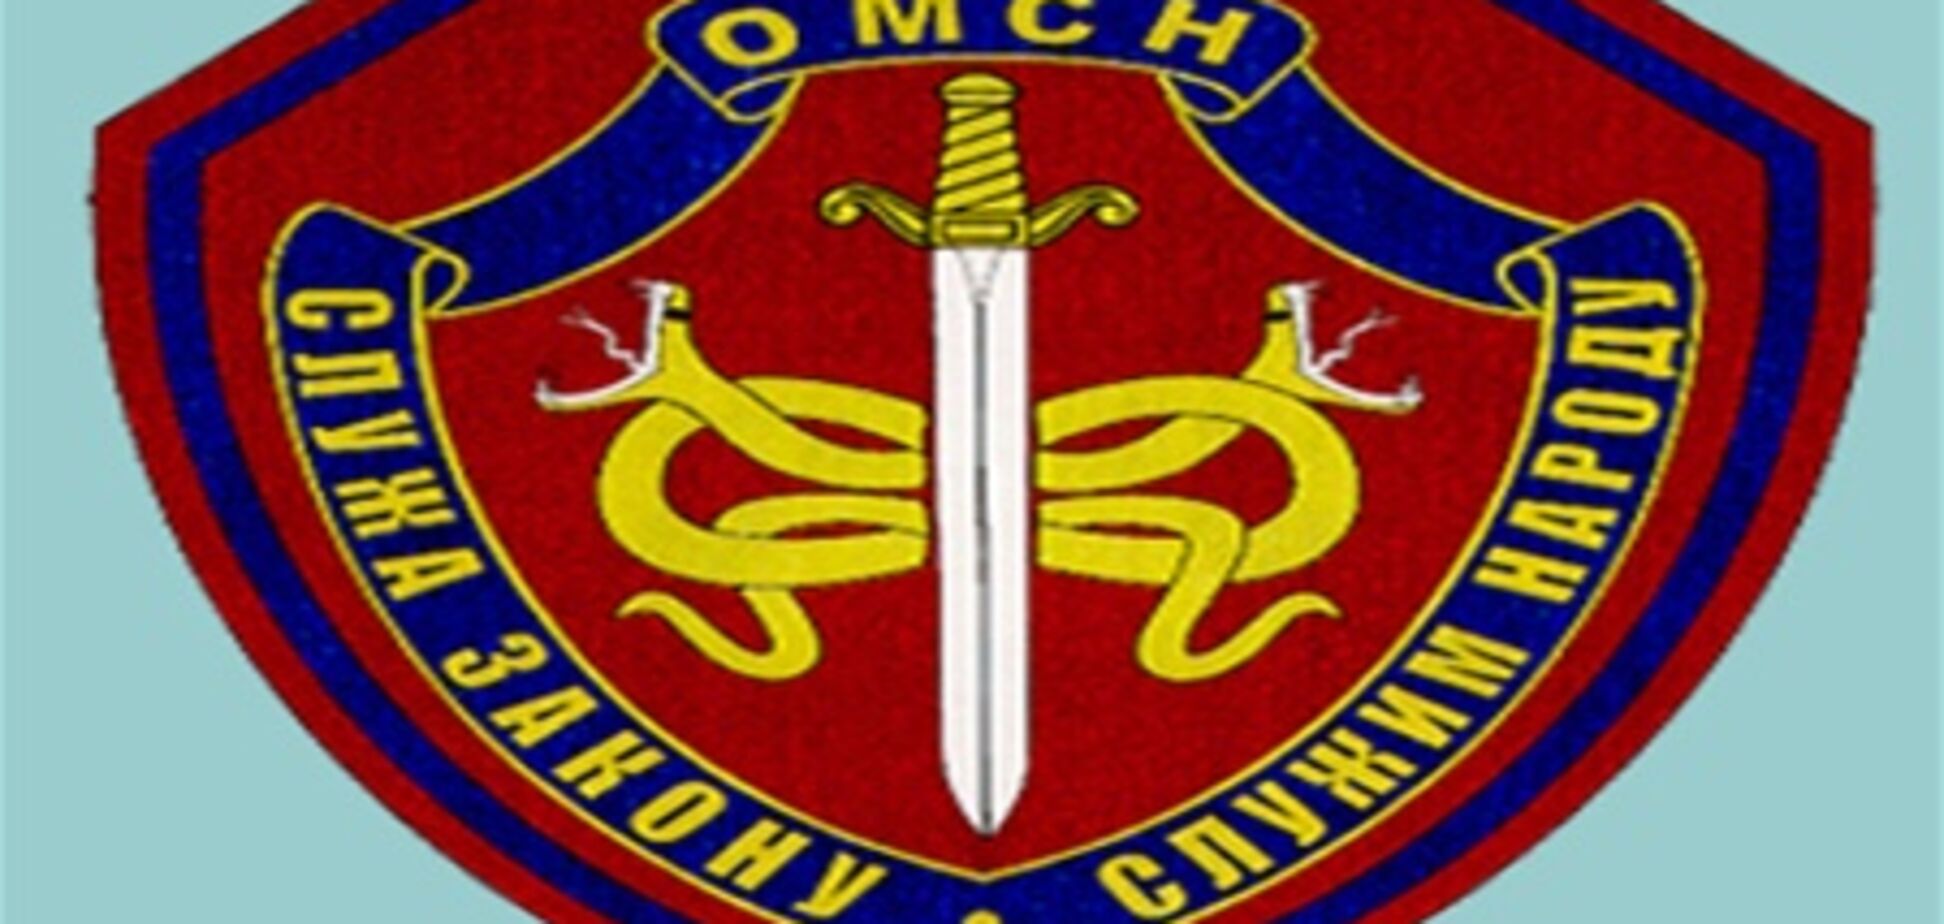 Нарукавный знак сотрудников отрядов милиции спецназа МВД России - копия знака солдатов SS